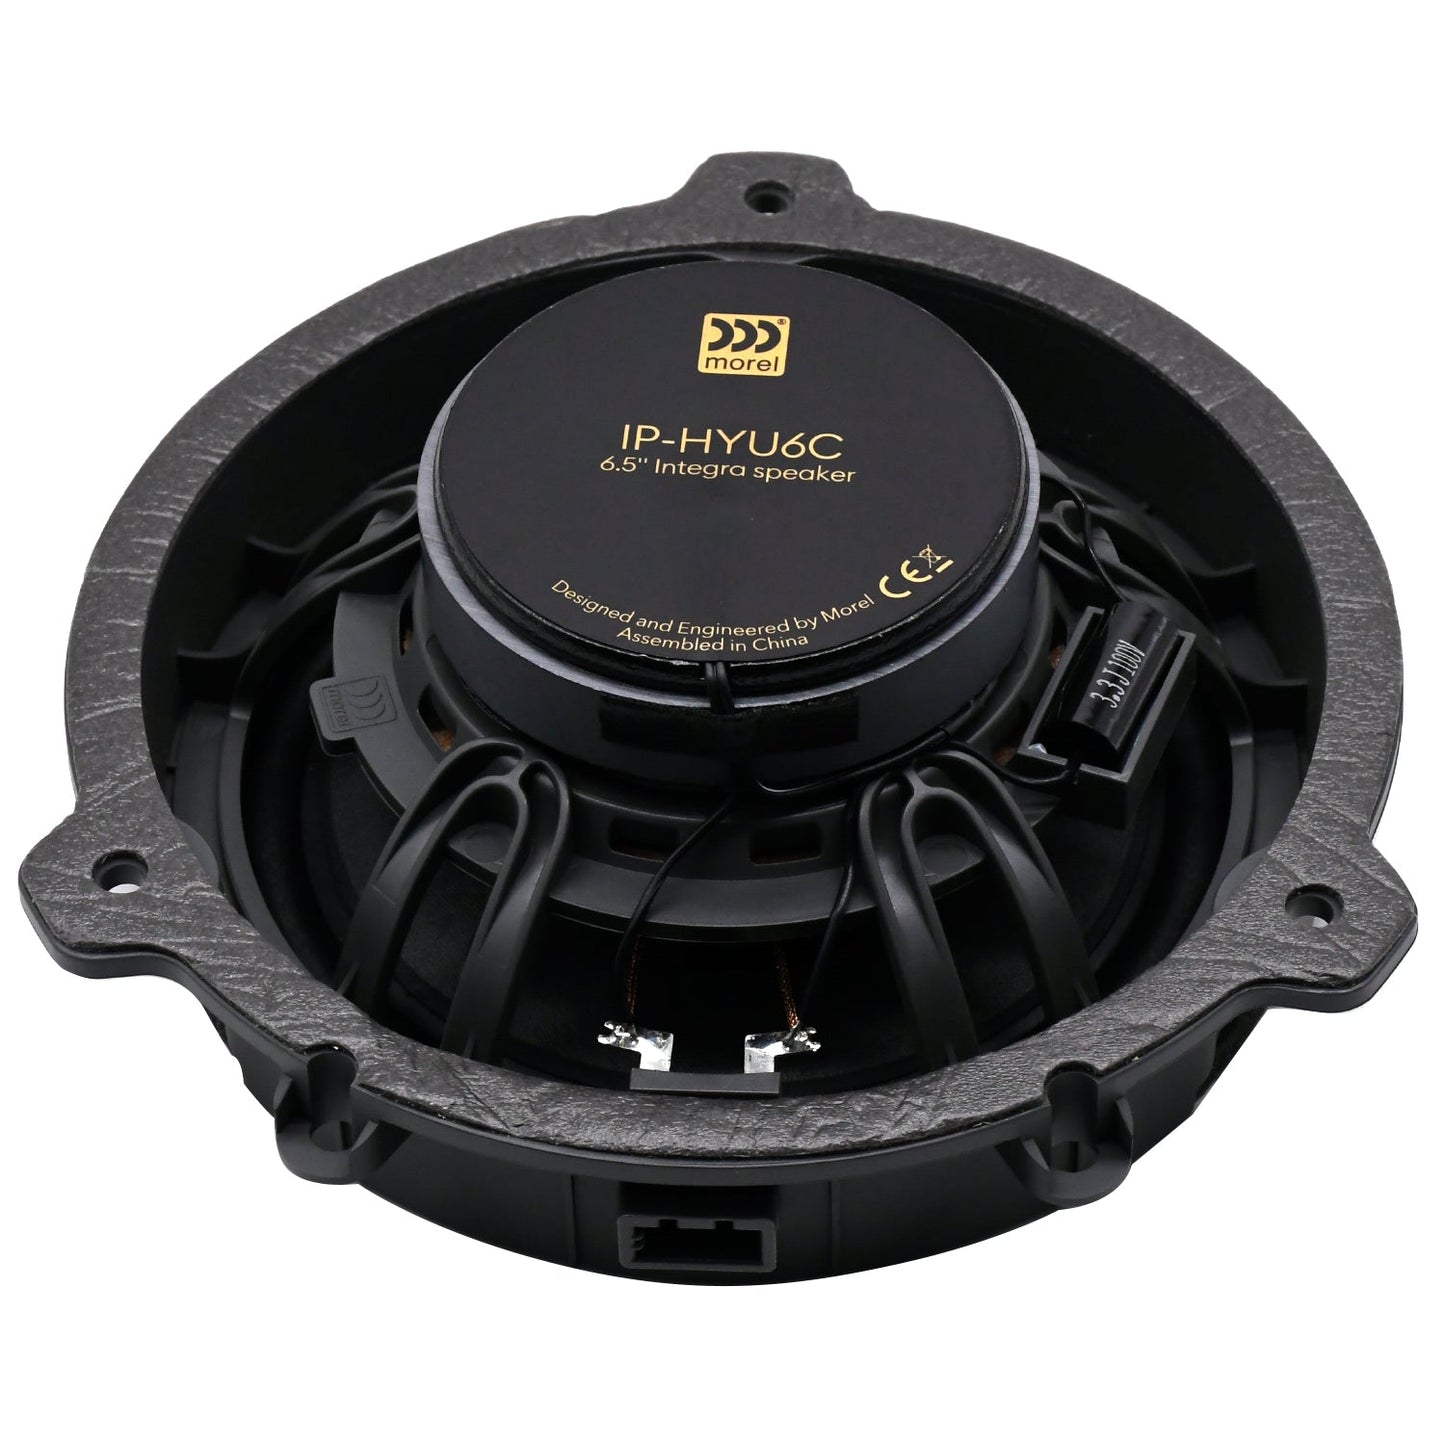 
                  
                    MOREL Hyundai DirectFit 6.5" 2-Way Co-Axial Speakers(IP-HYU6C)-COAXIAL SPEAKERS-MOREL-CARPLUS
                  
                